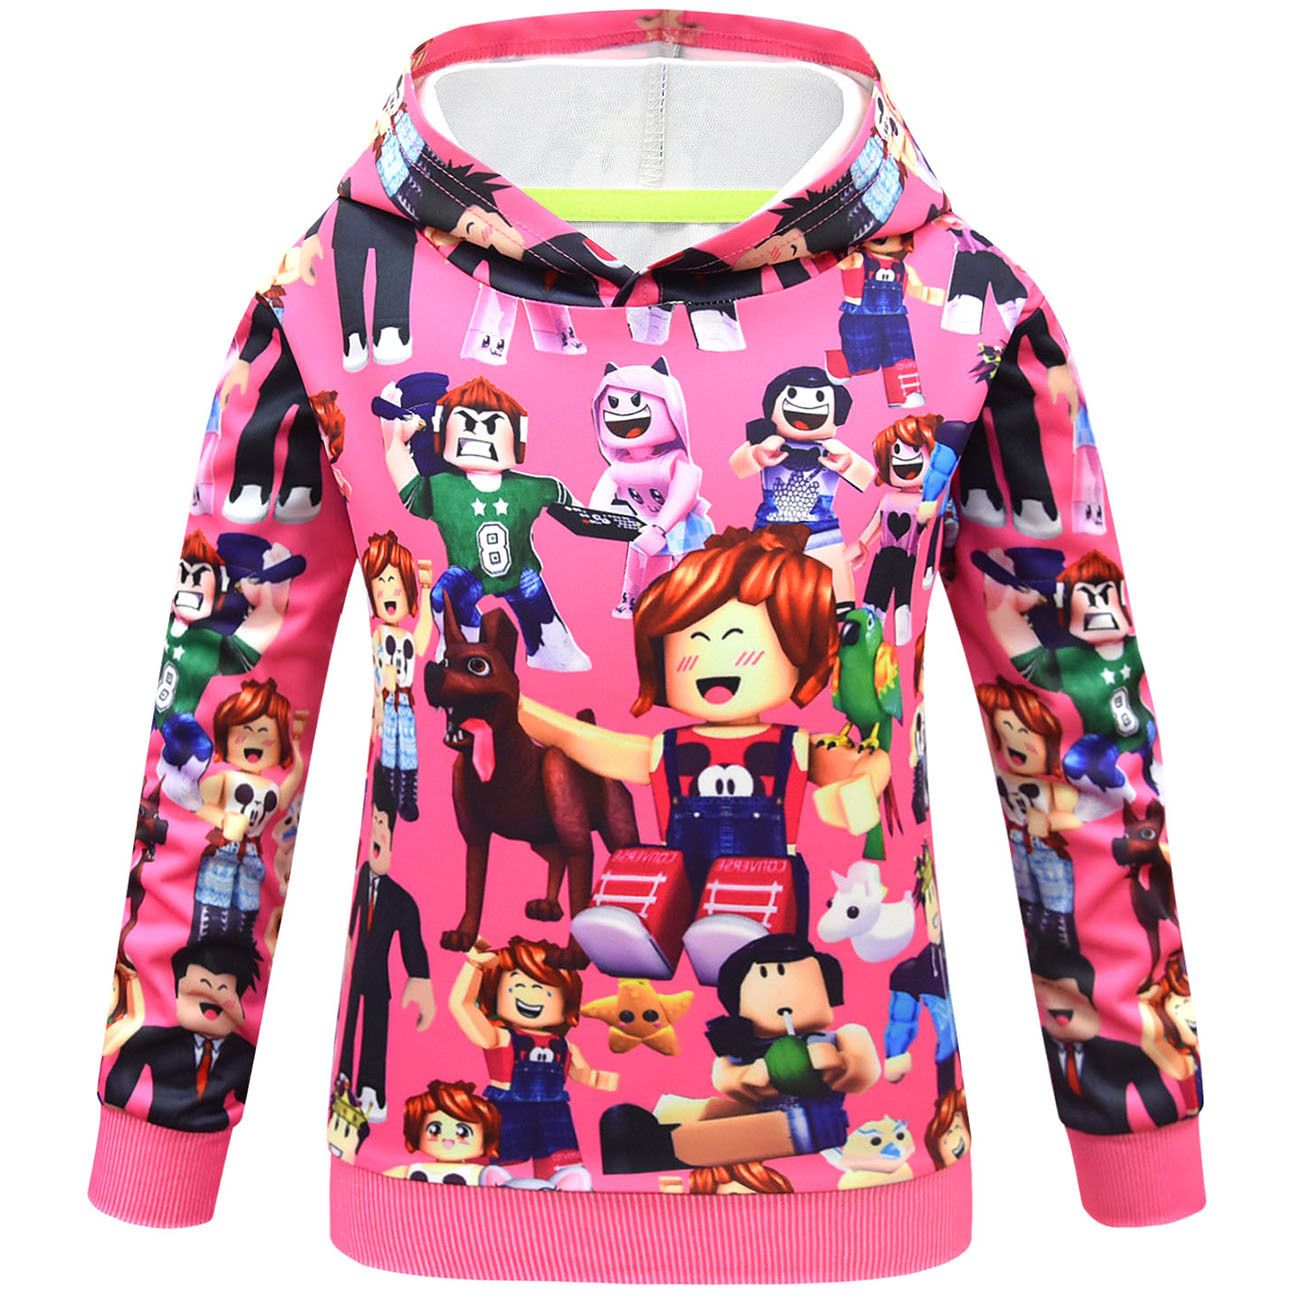 Roblox Sweatshirts Hoodie Childrens Hooded Sweatshirt Casual Tops Long Sleeve Printing Kids Tops Roblox Outerwear